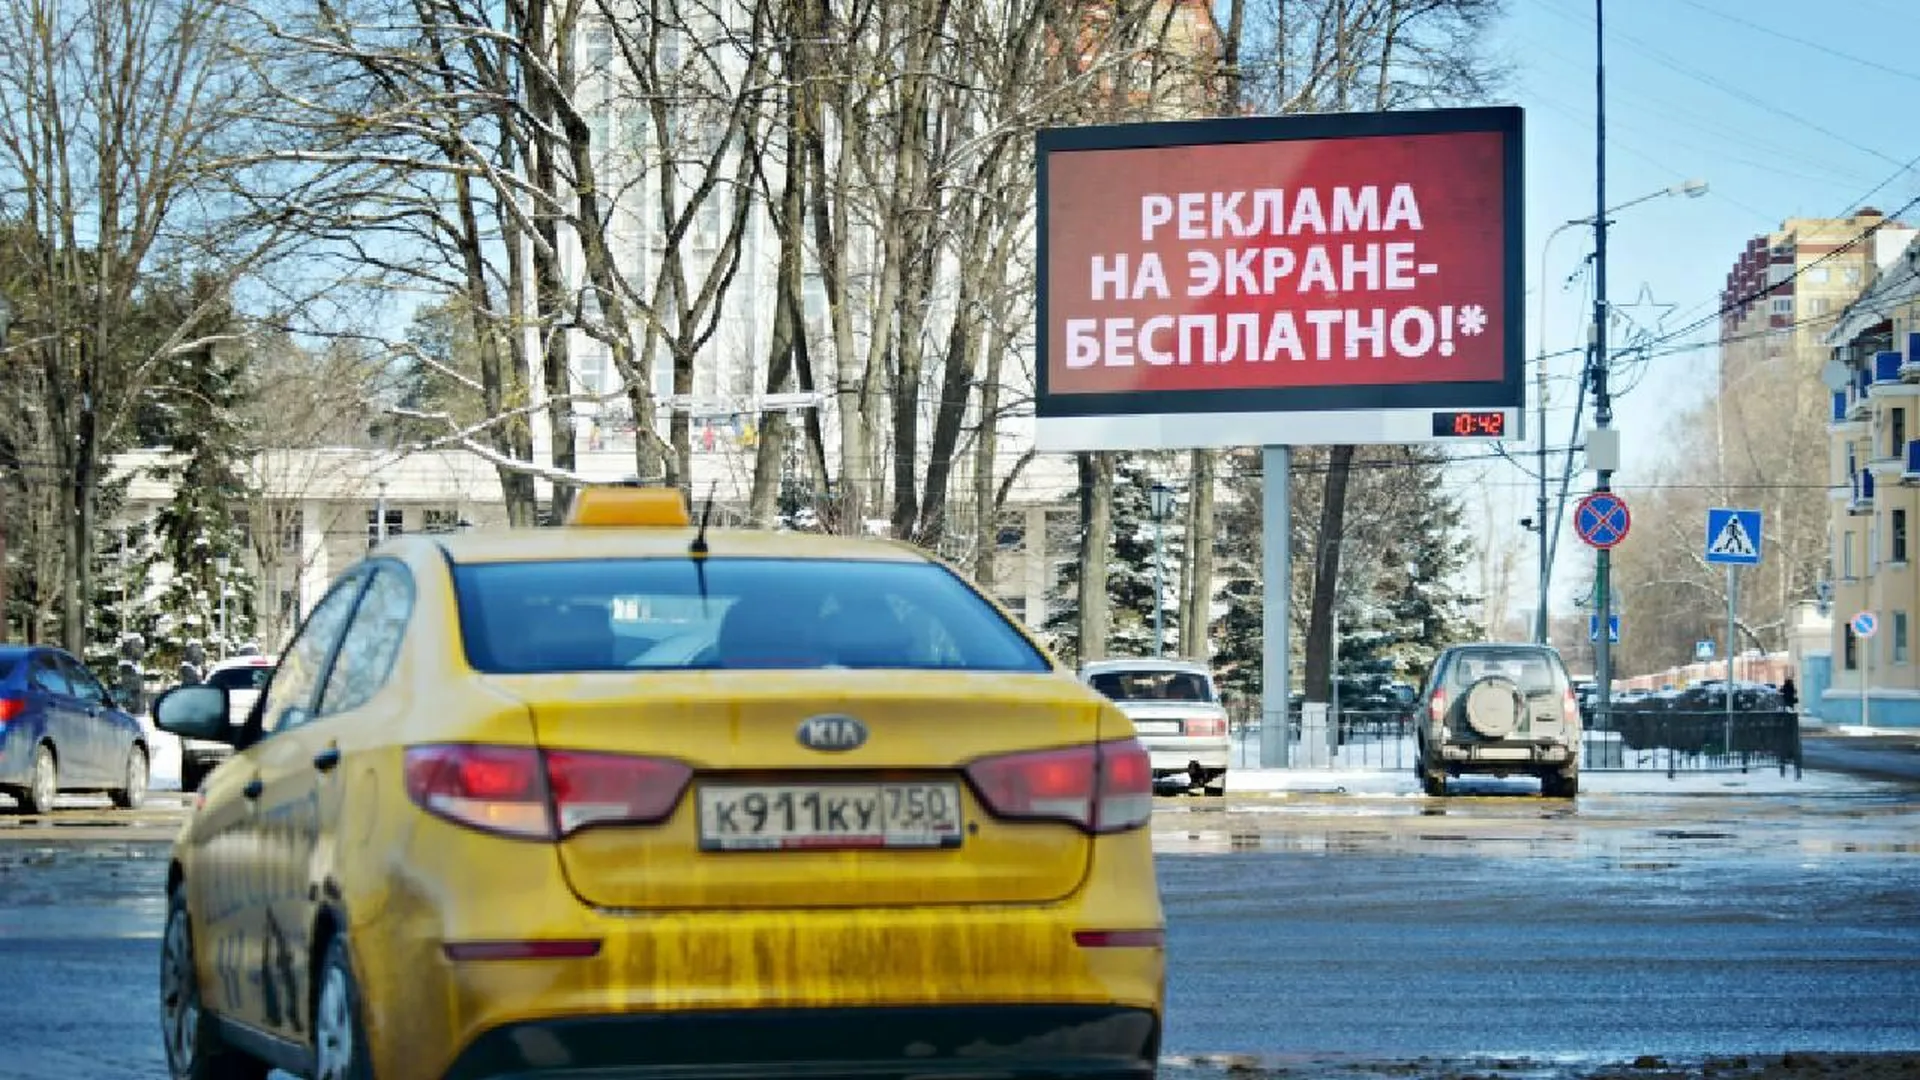 УФАС проверит уличную рекламу донорства яйцеклеток в Нижнем Новгороде